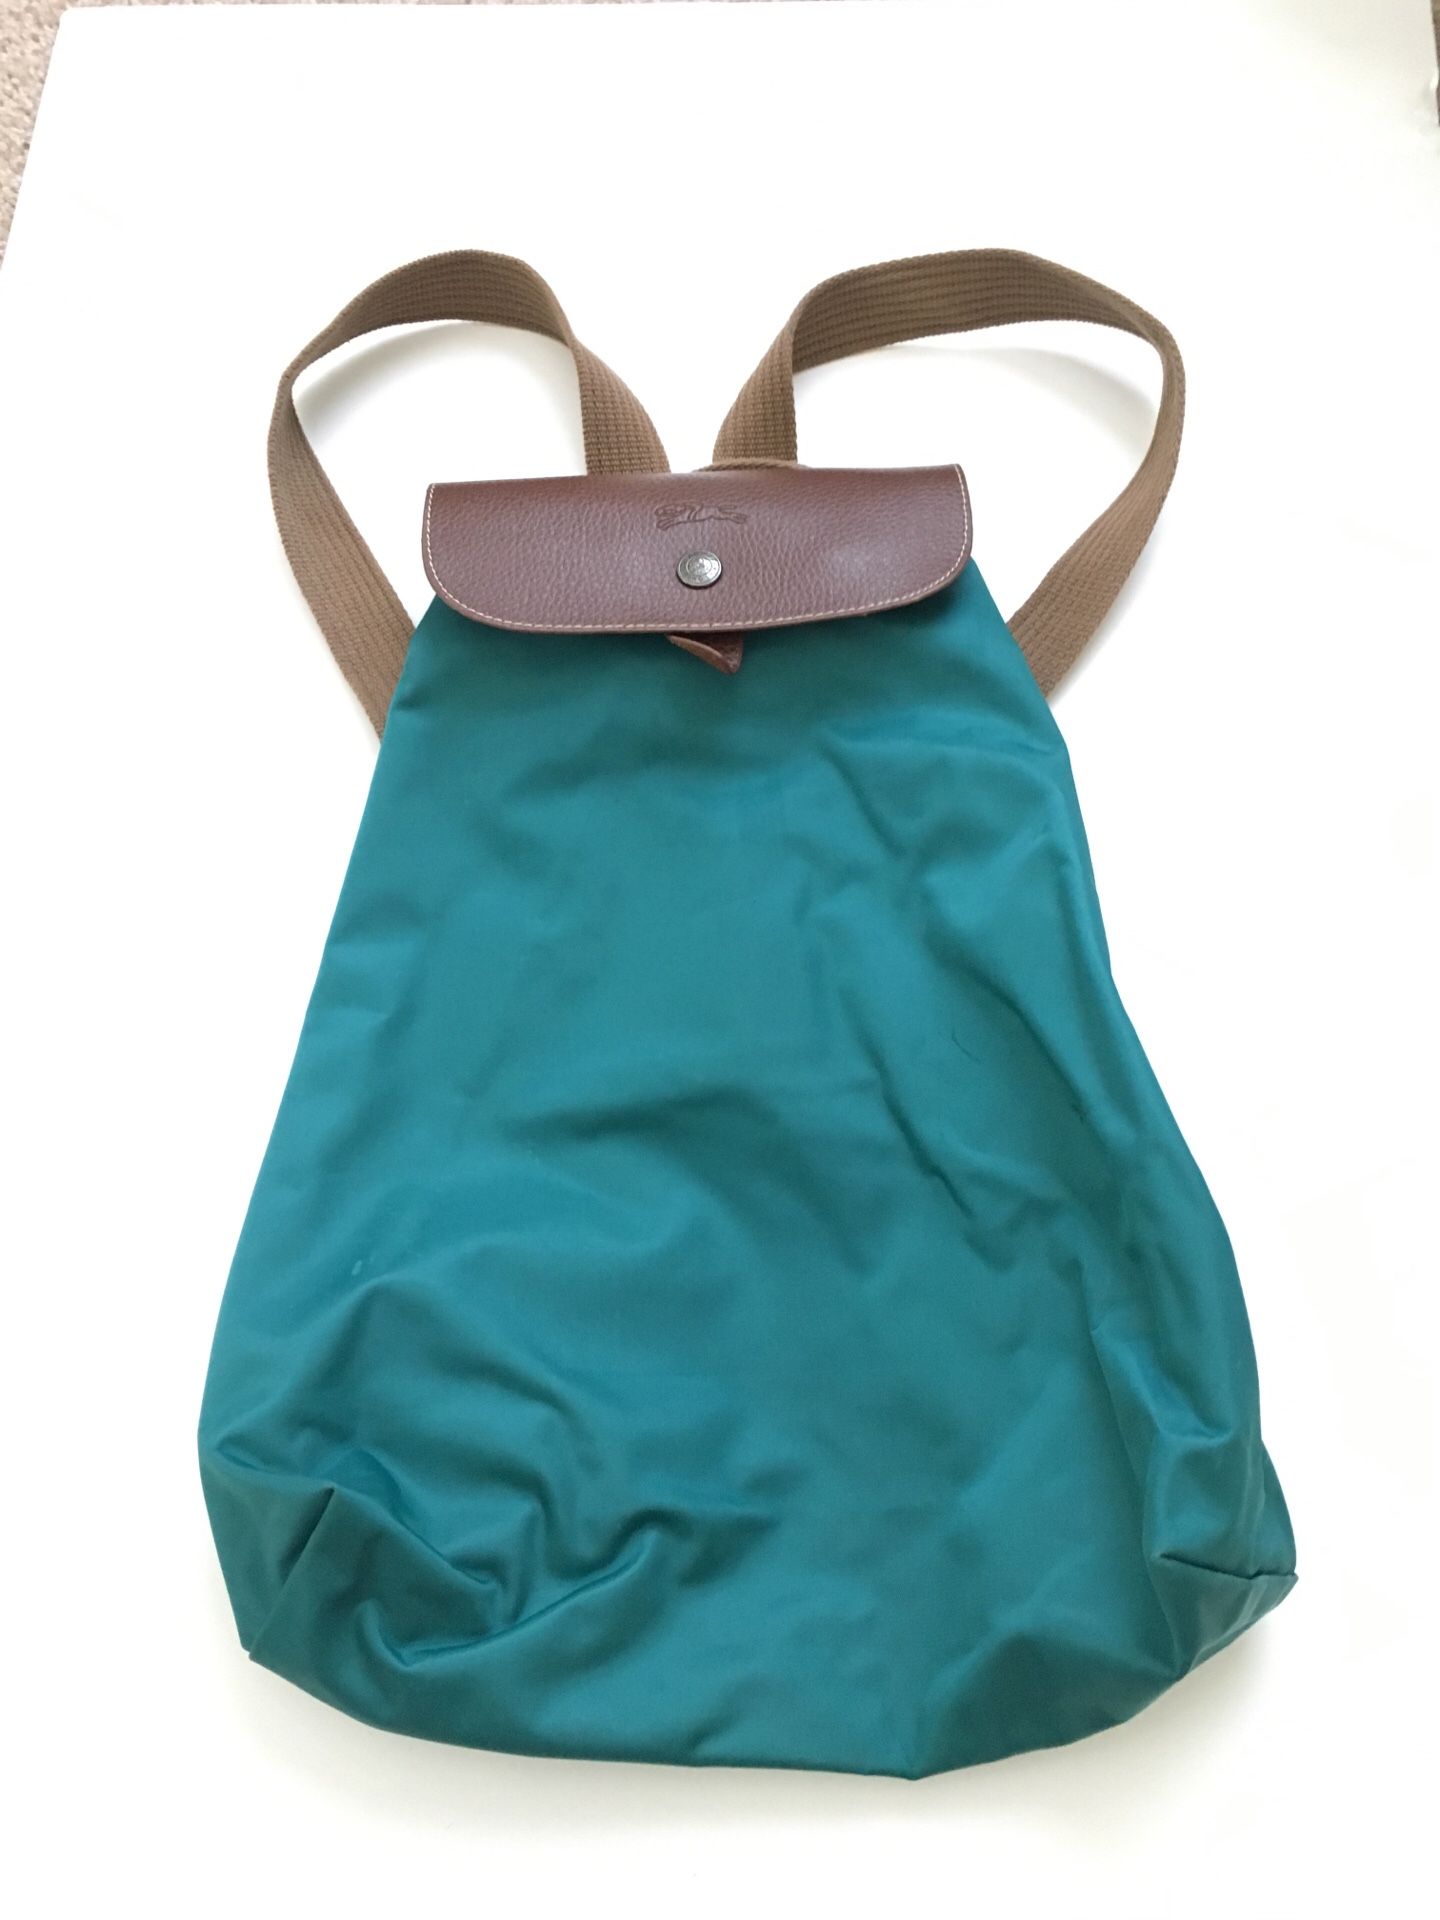 Longchamp purse, turquoise, backpack style